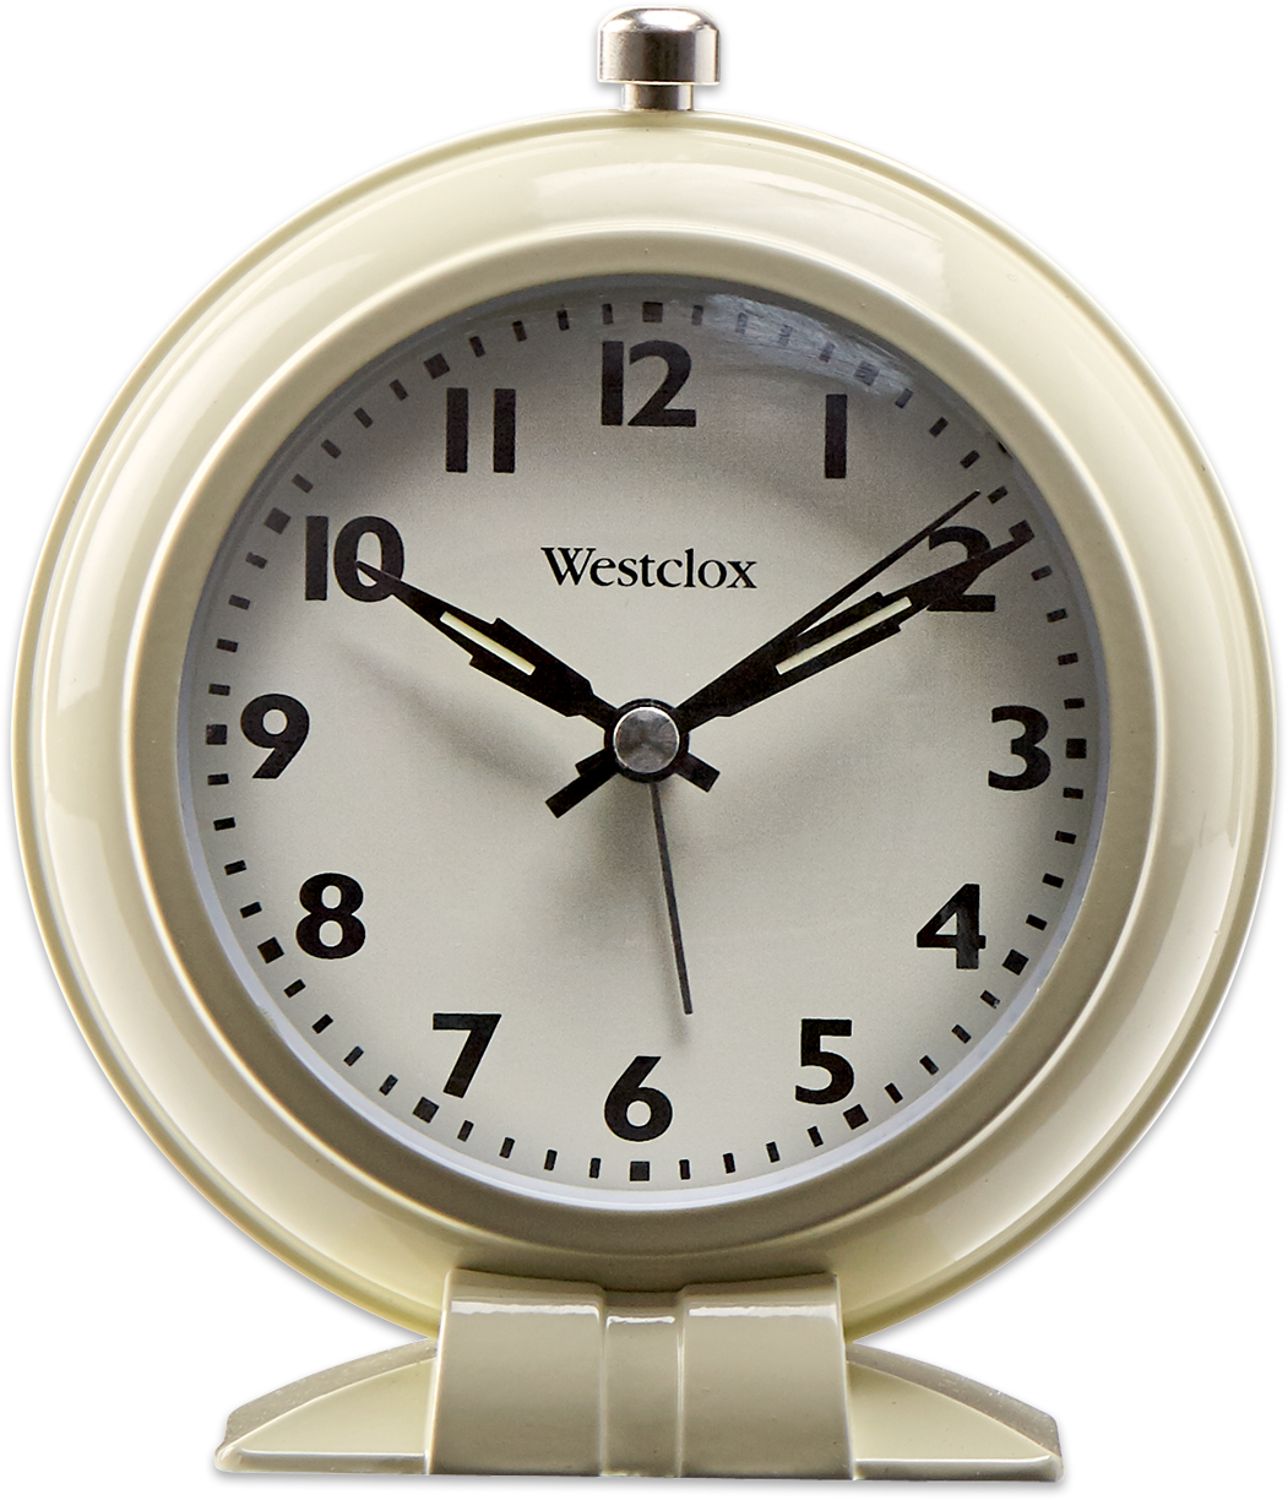 westclox big ben alarm clock instructions